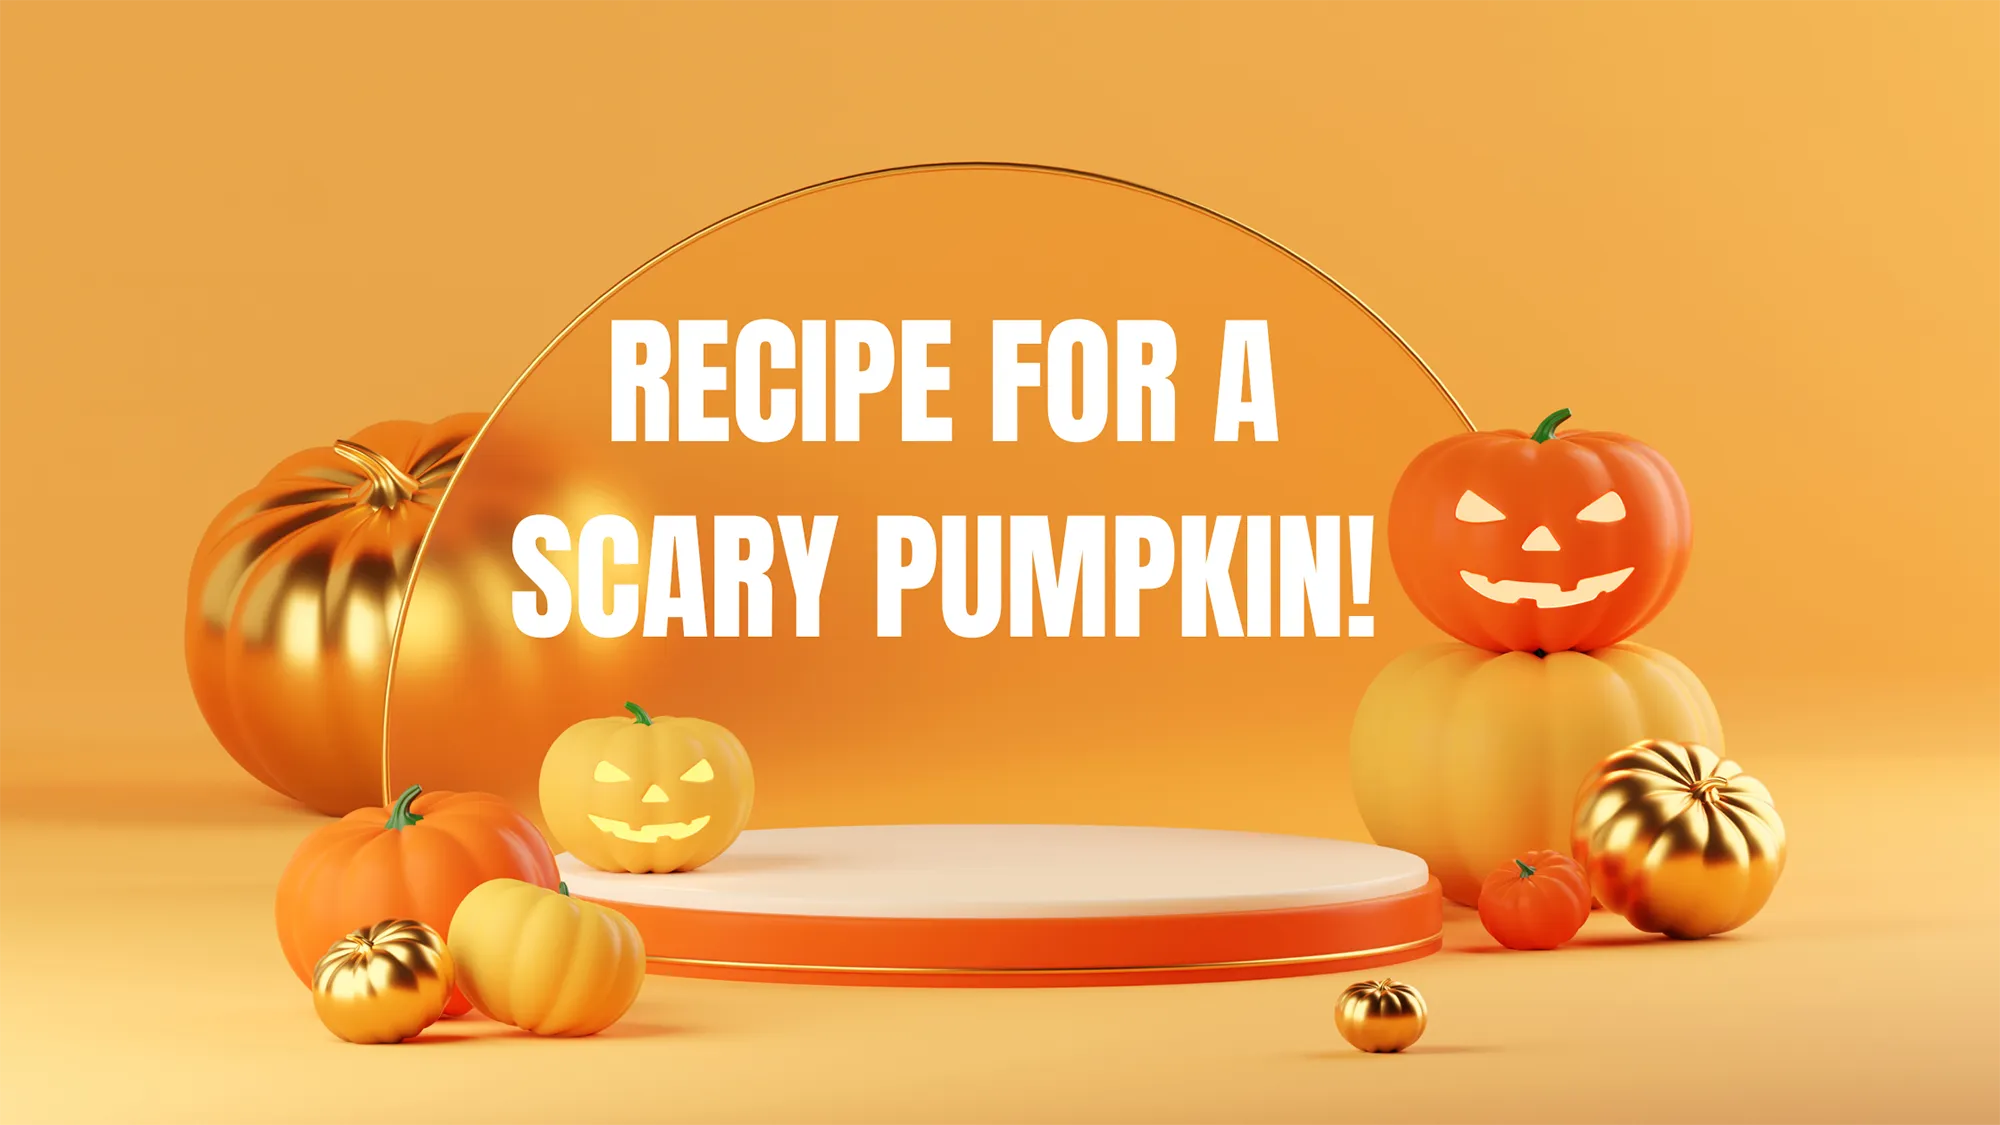 Pumpkin a scary recipe